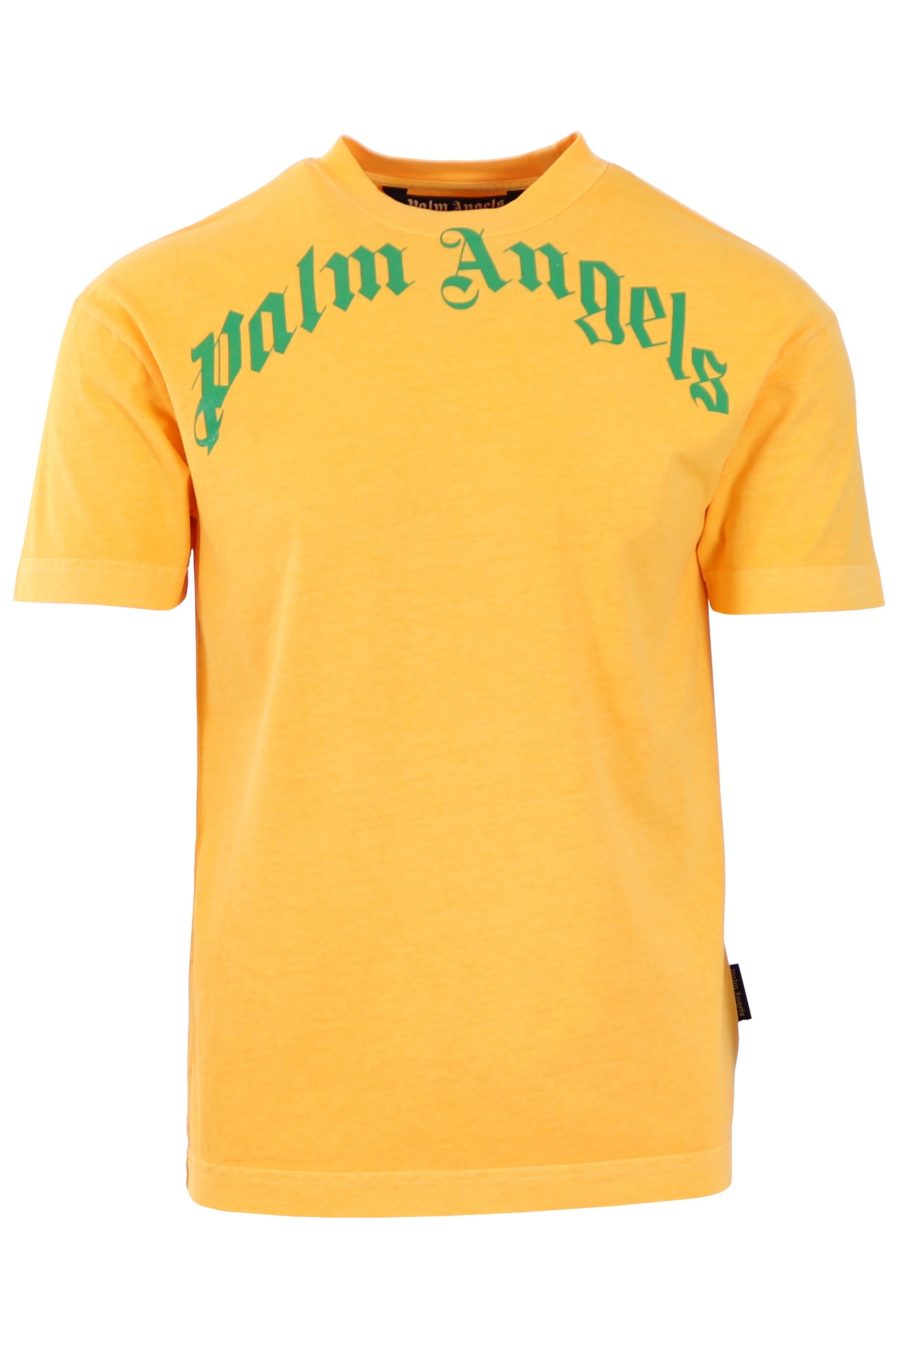 T-shirt Palm Angels jaune logo vert - 594db2545daa60134919d7939234c2fd7658c51d